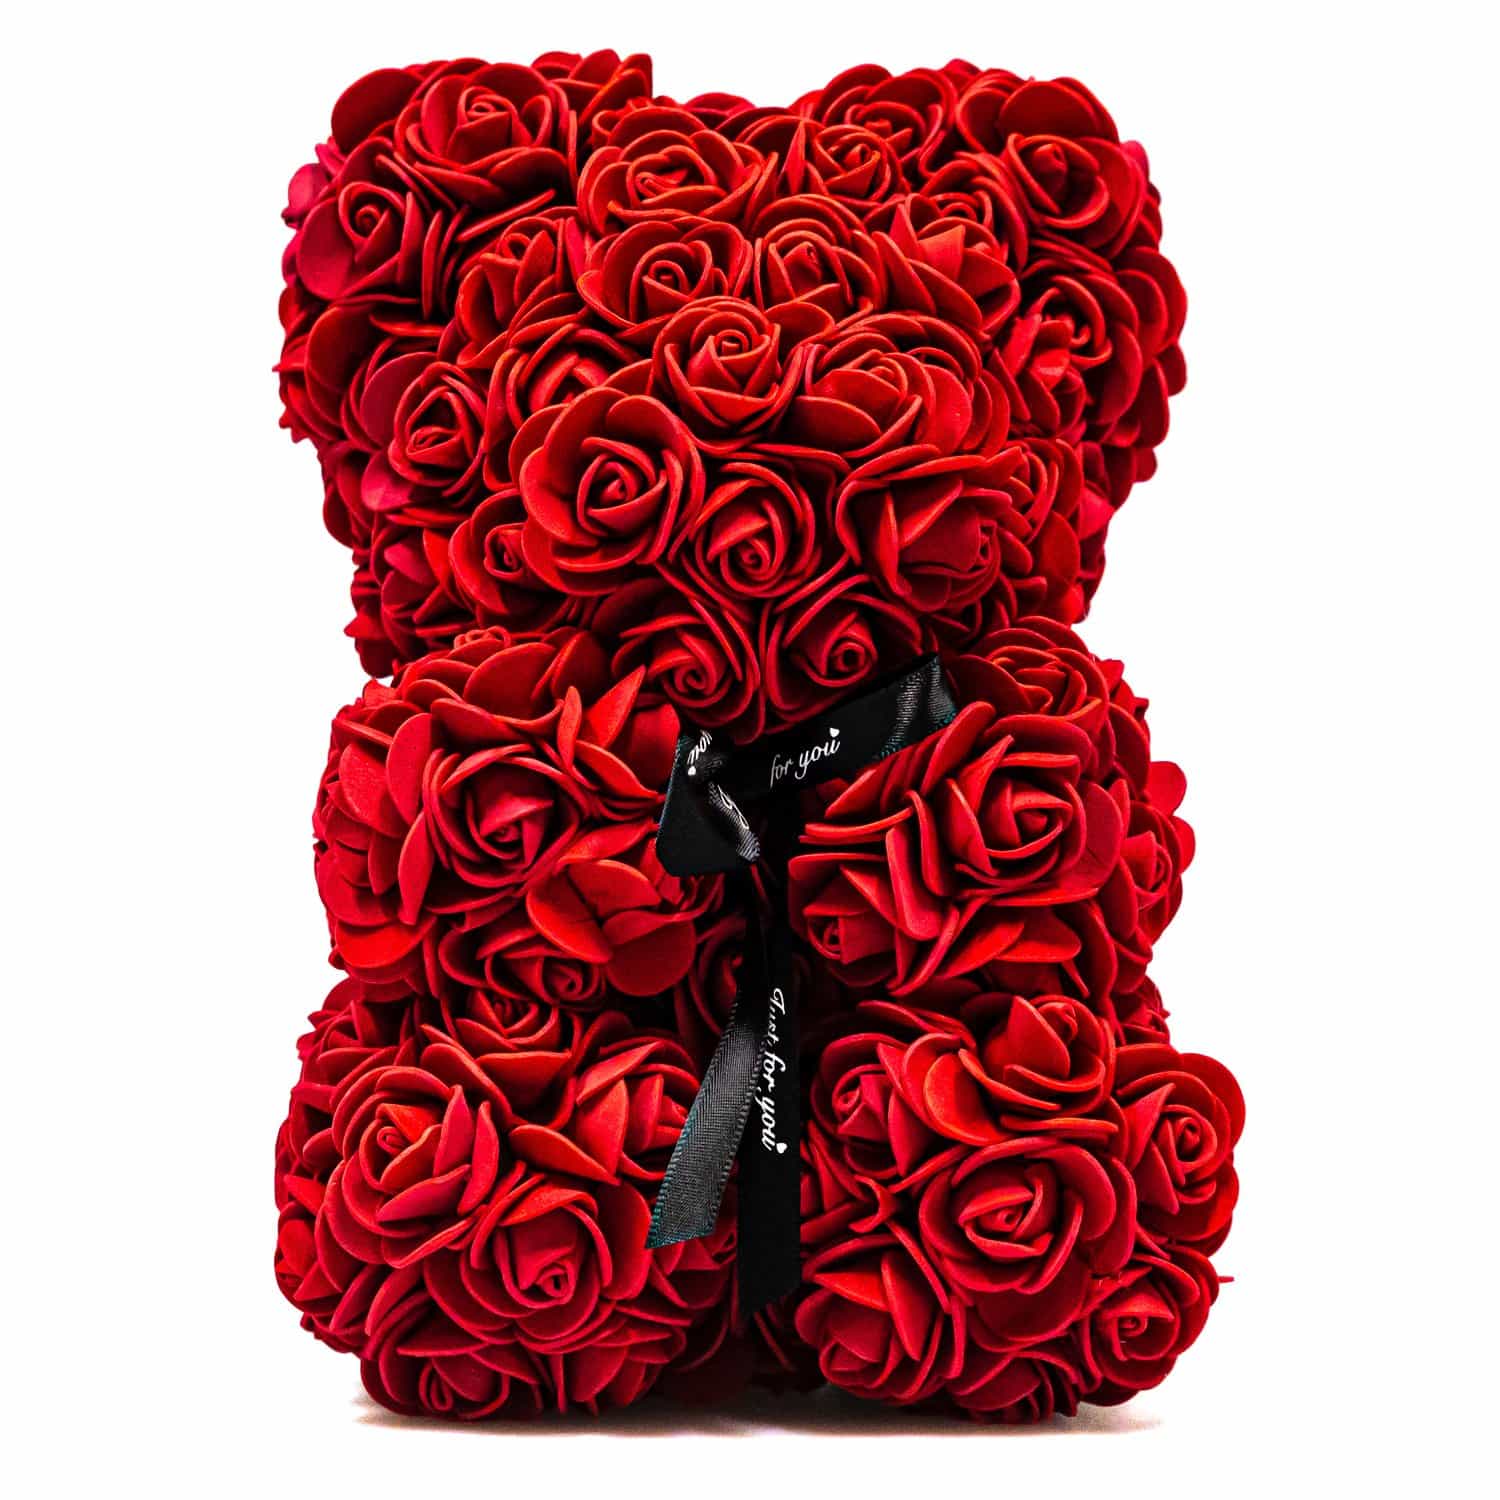 Roter Rosen-Teddy - Blumenbär - Rosenbär - Blumengeschenk 